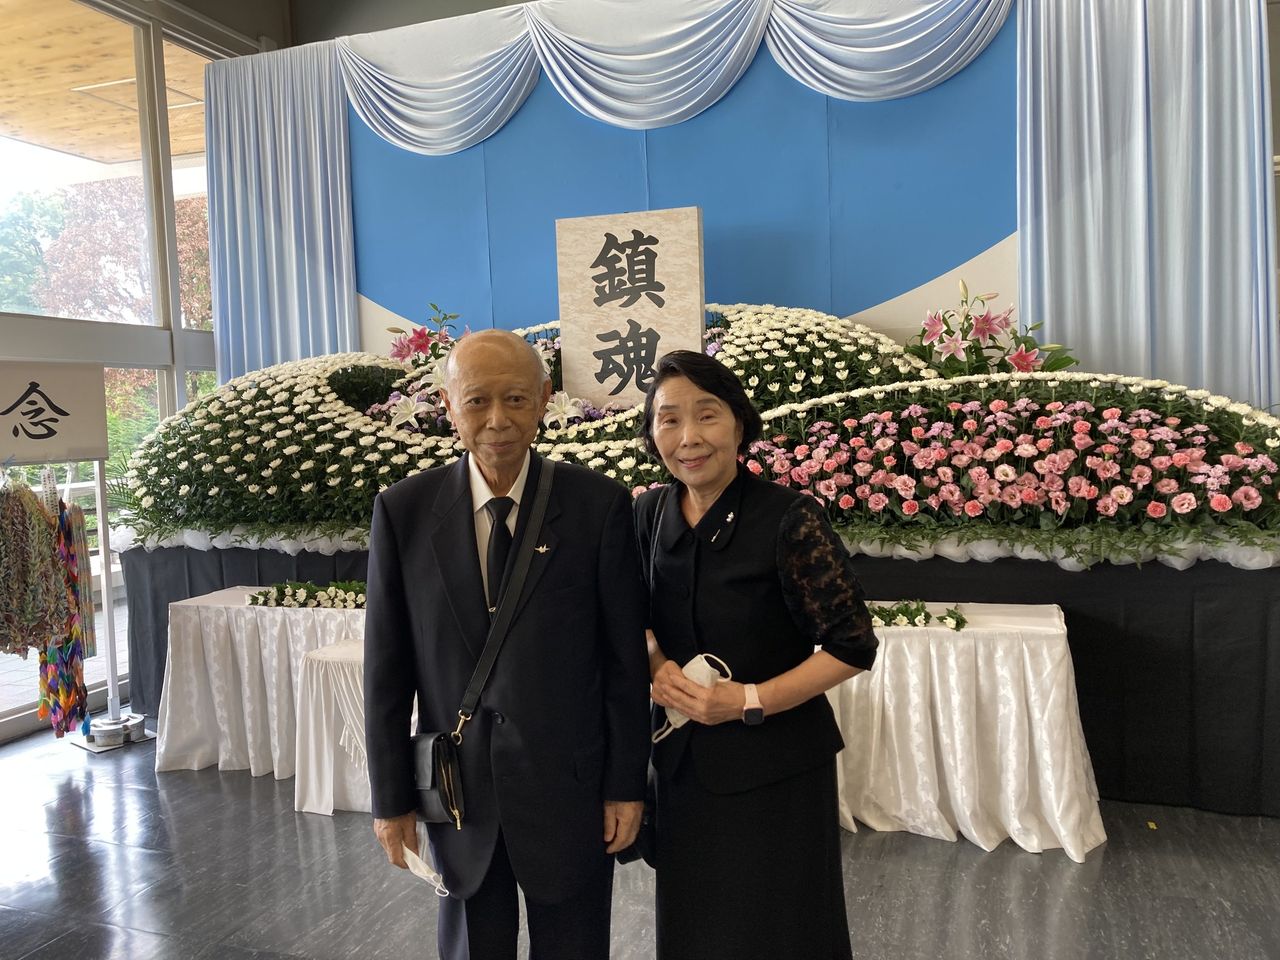 広島の平和記念の日と、三鷹市原爆被害者の会の大岩孝平さんの逝去について